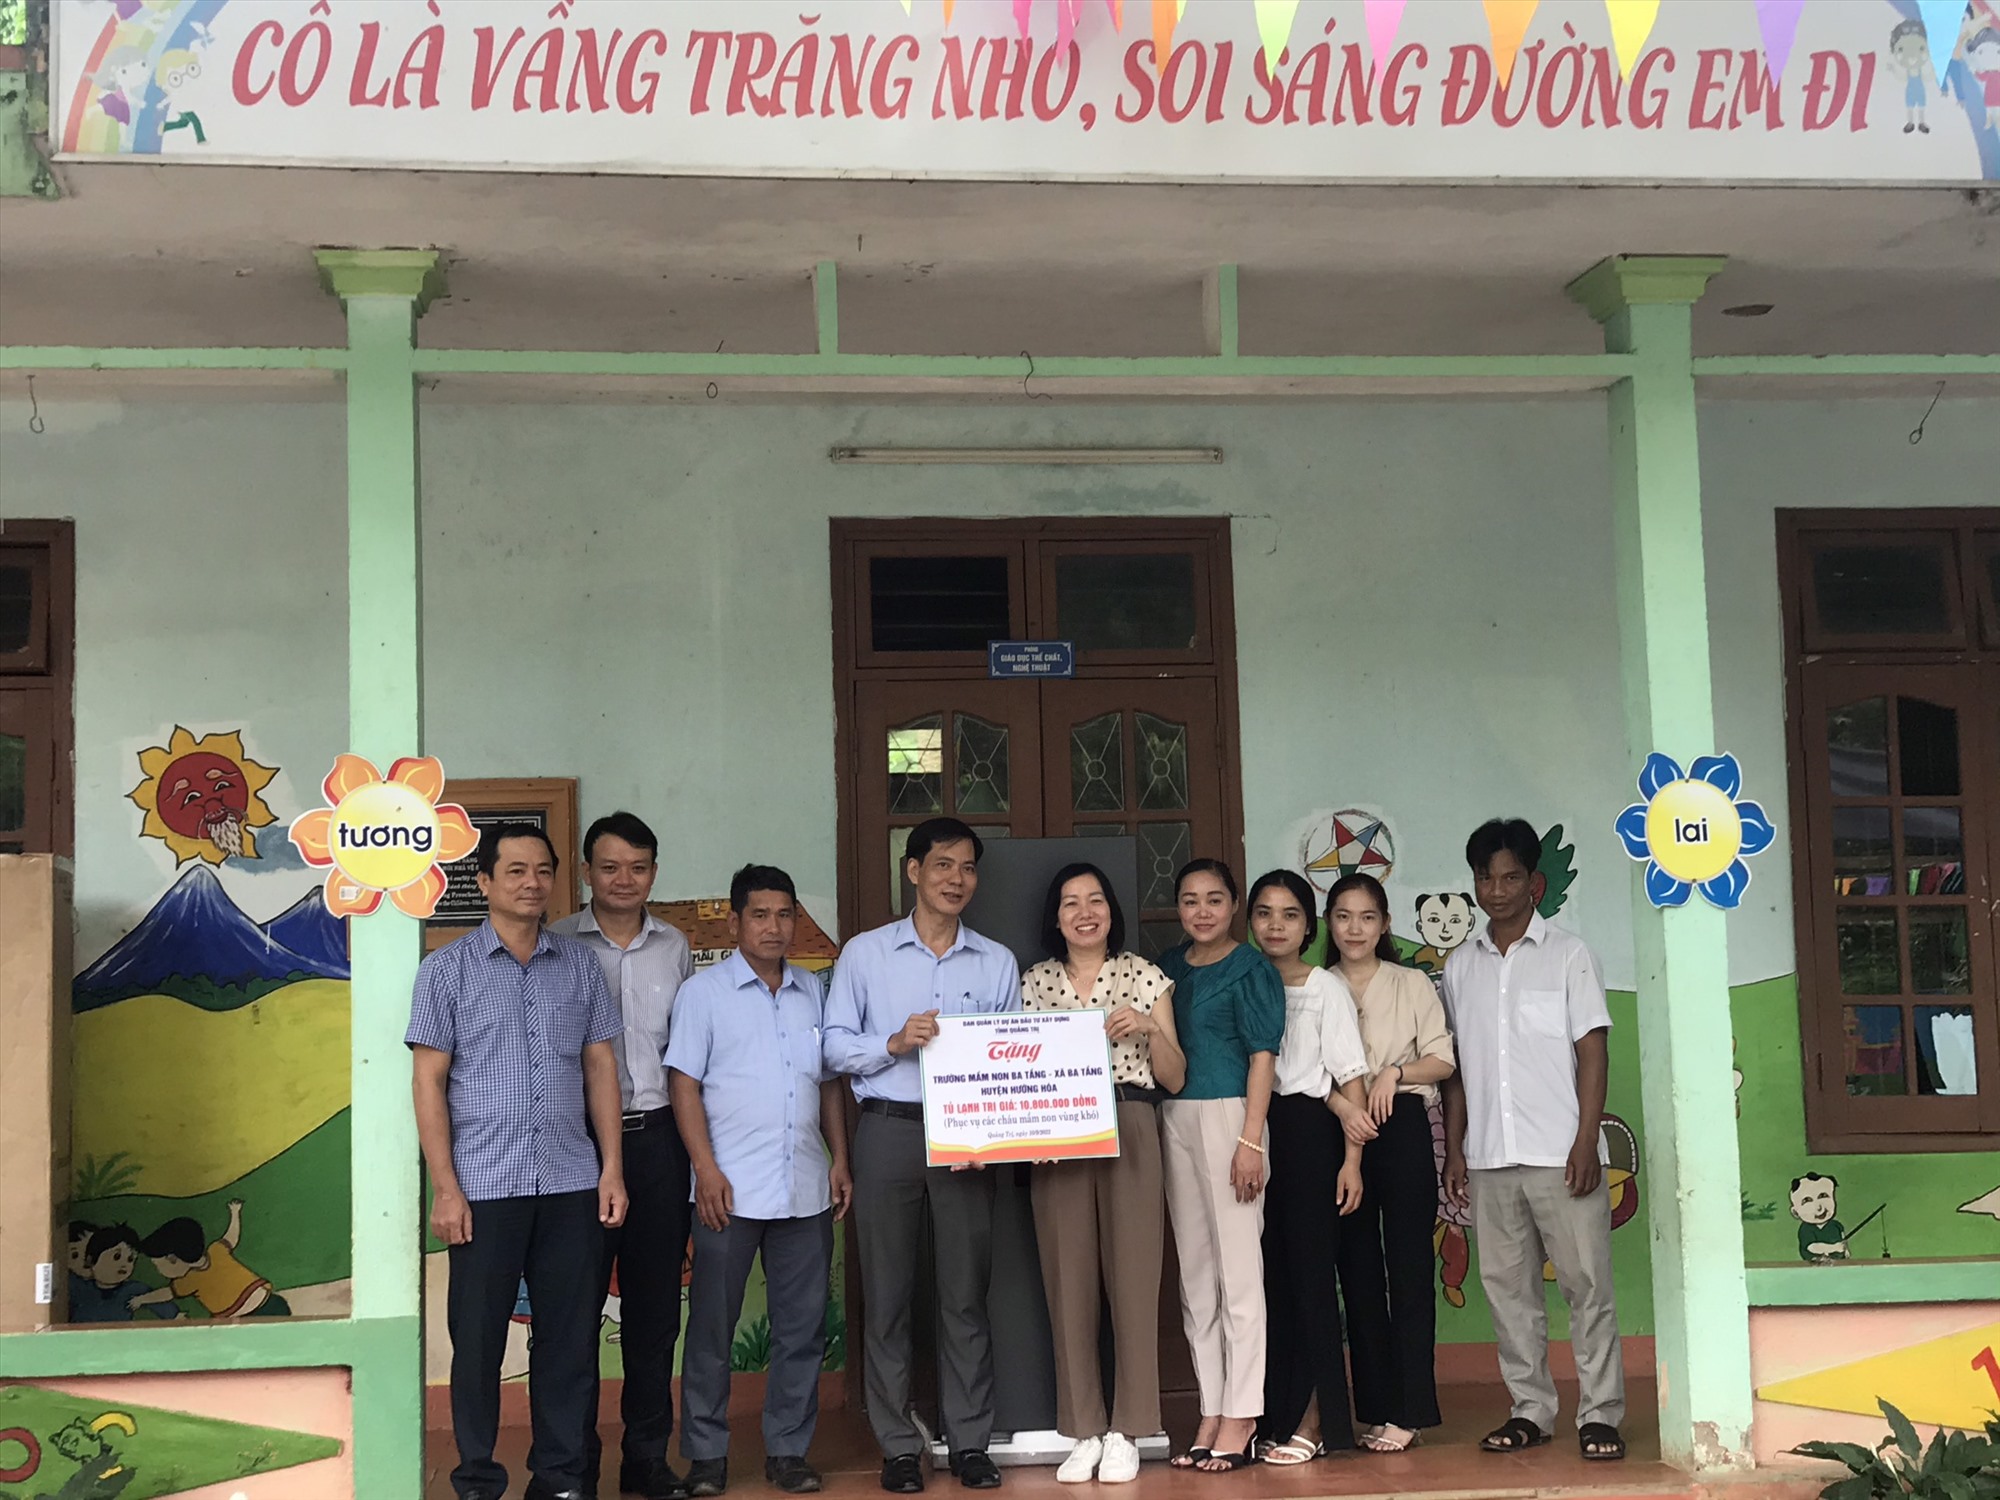 Ông Nguyễn Đăng Ánh đến thăm và trao tặng tủ lạnh cho trường mần non Ba Tầng